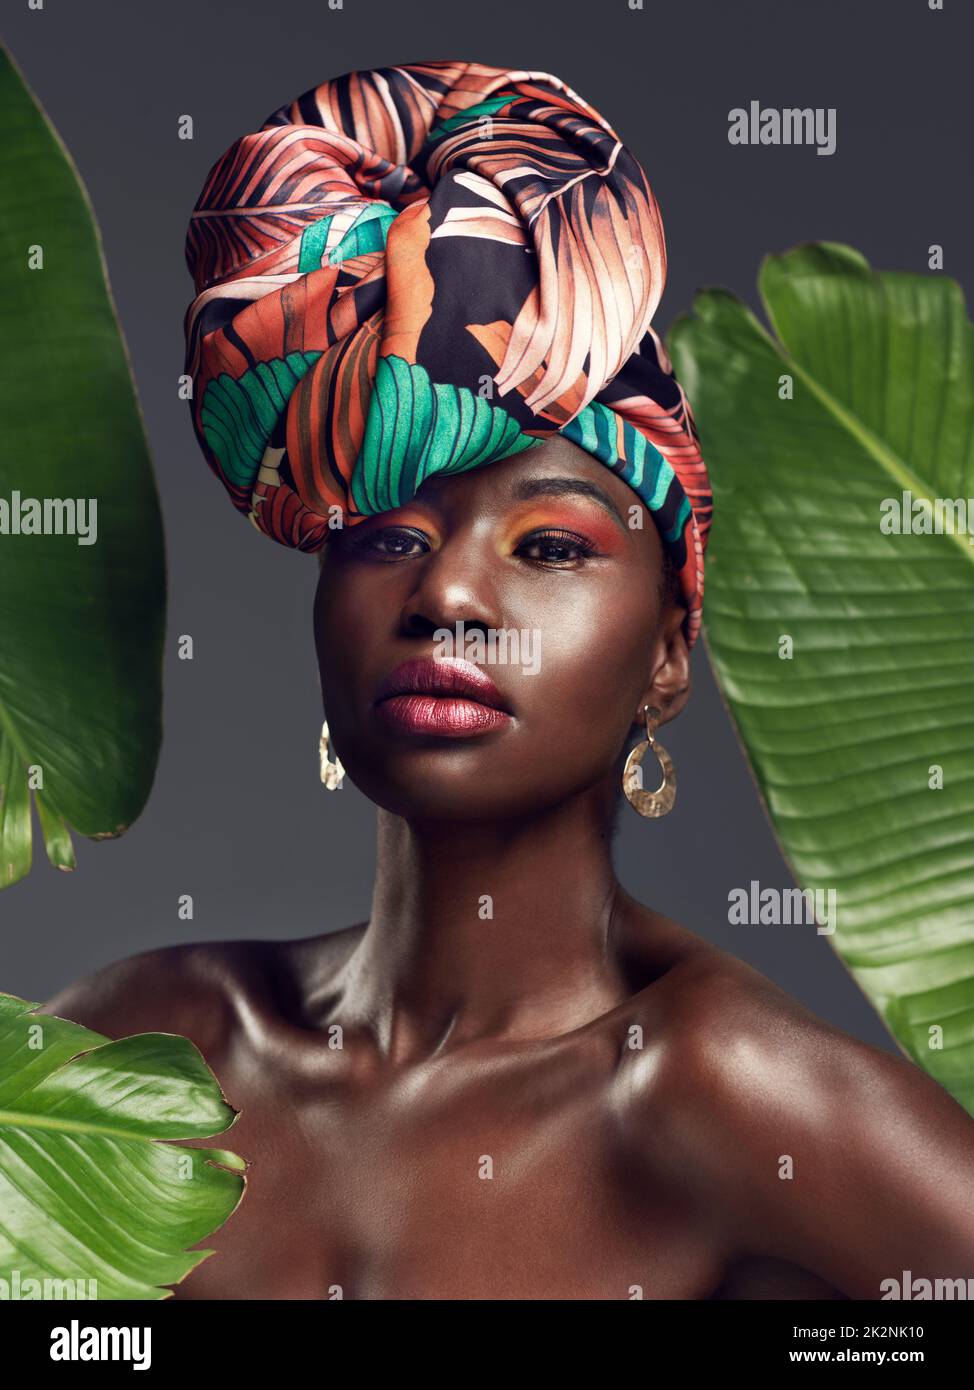 Plus que du tissu, sa ma couronne. Photo studio d'une belle jeune femme portant une tête d'enveloppement africaine traditionnelle sur un fond verdoyant. Banque D'Images